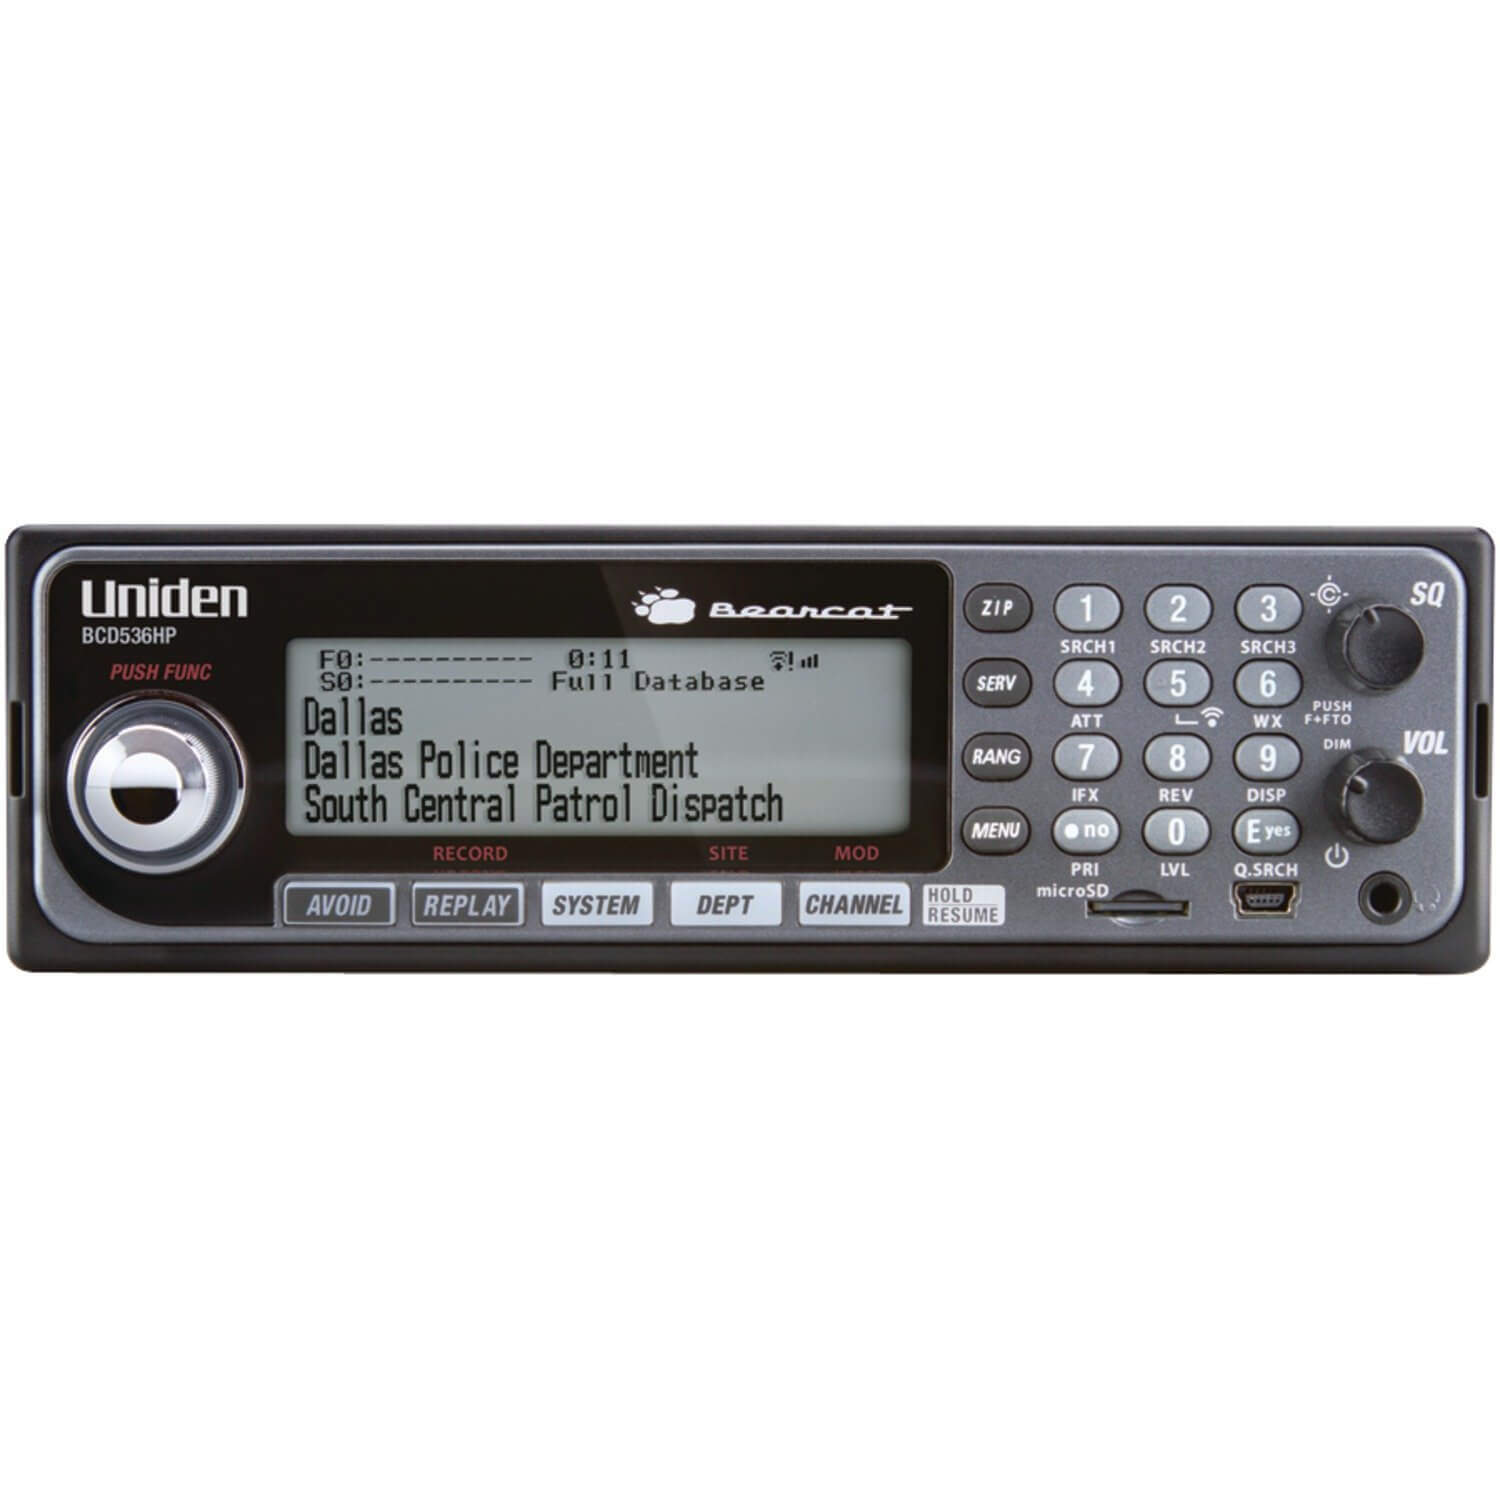 Uniden BCD536HP Digital Phase 2 Base/Mobile Scanner